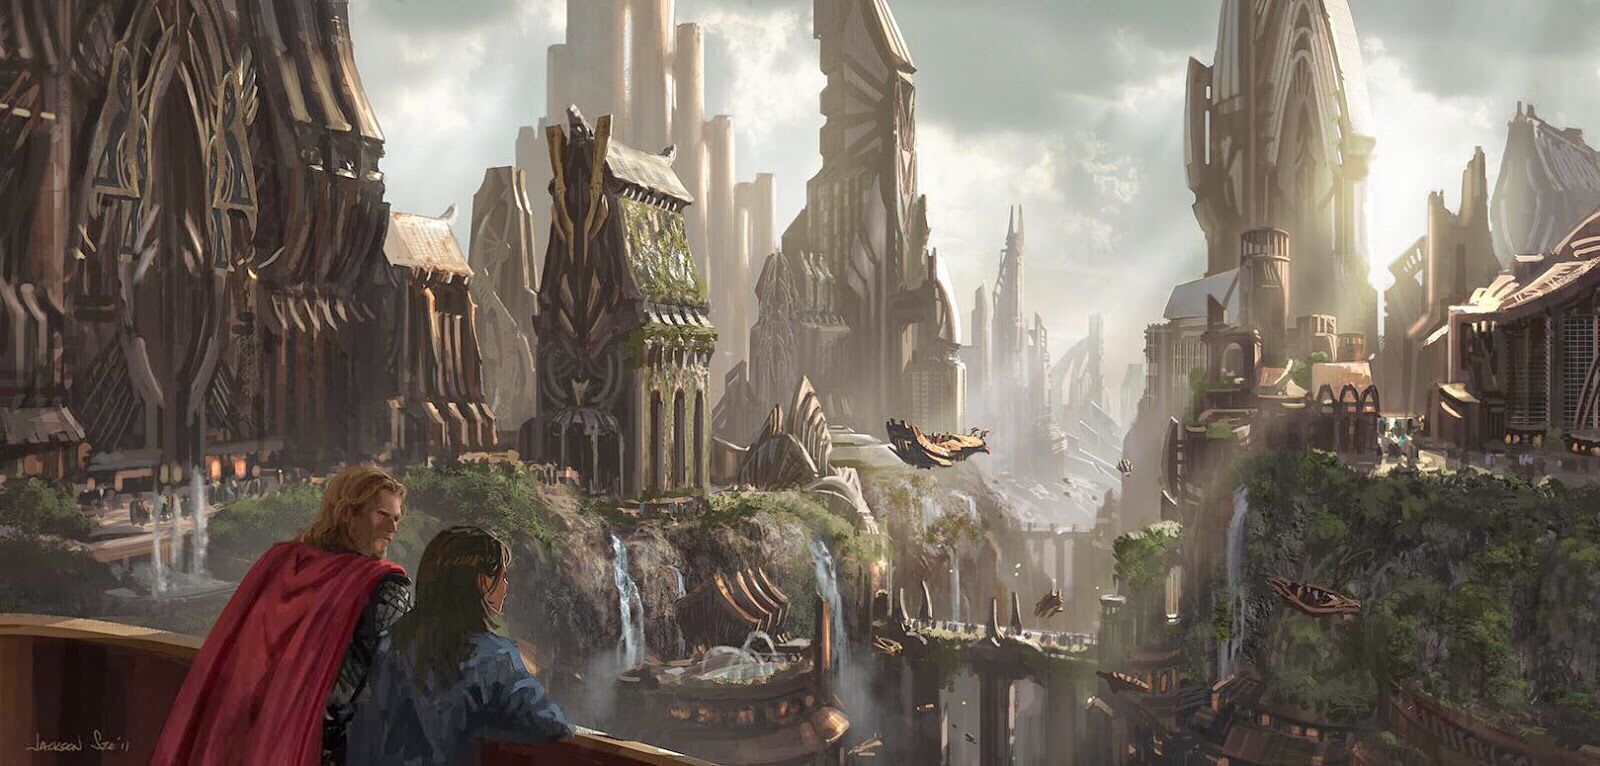 Asgard | Concept art, Elven city, The dark world